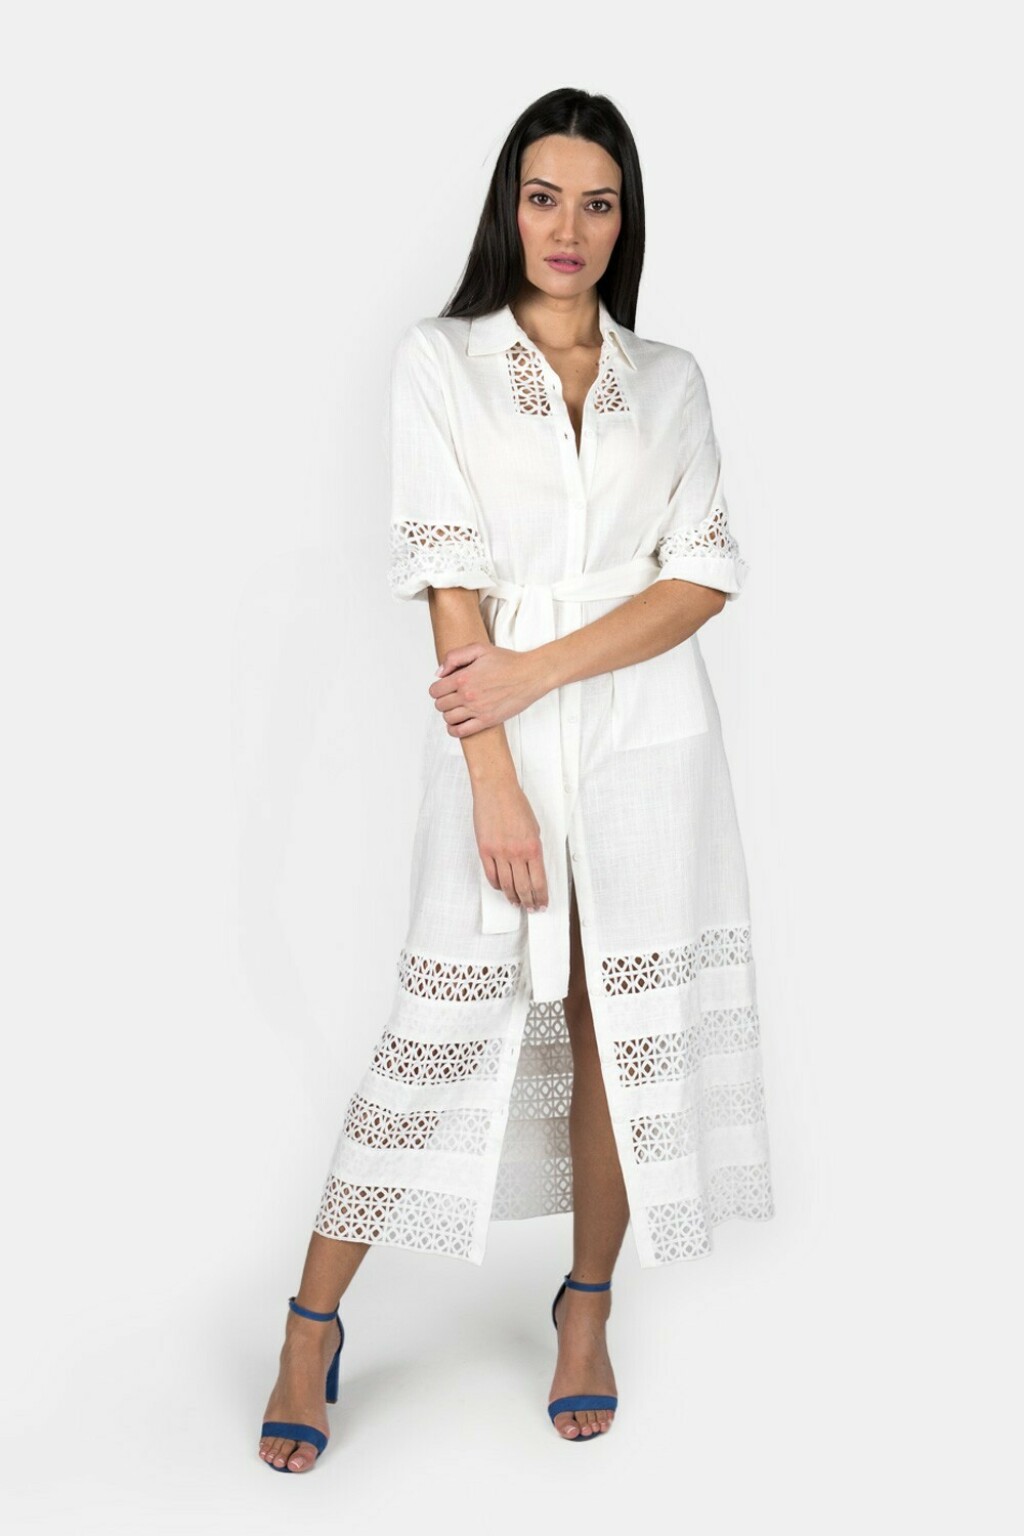 Ponuda bijelih haljina u trgovinama - 10